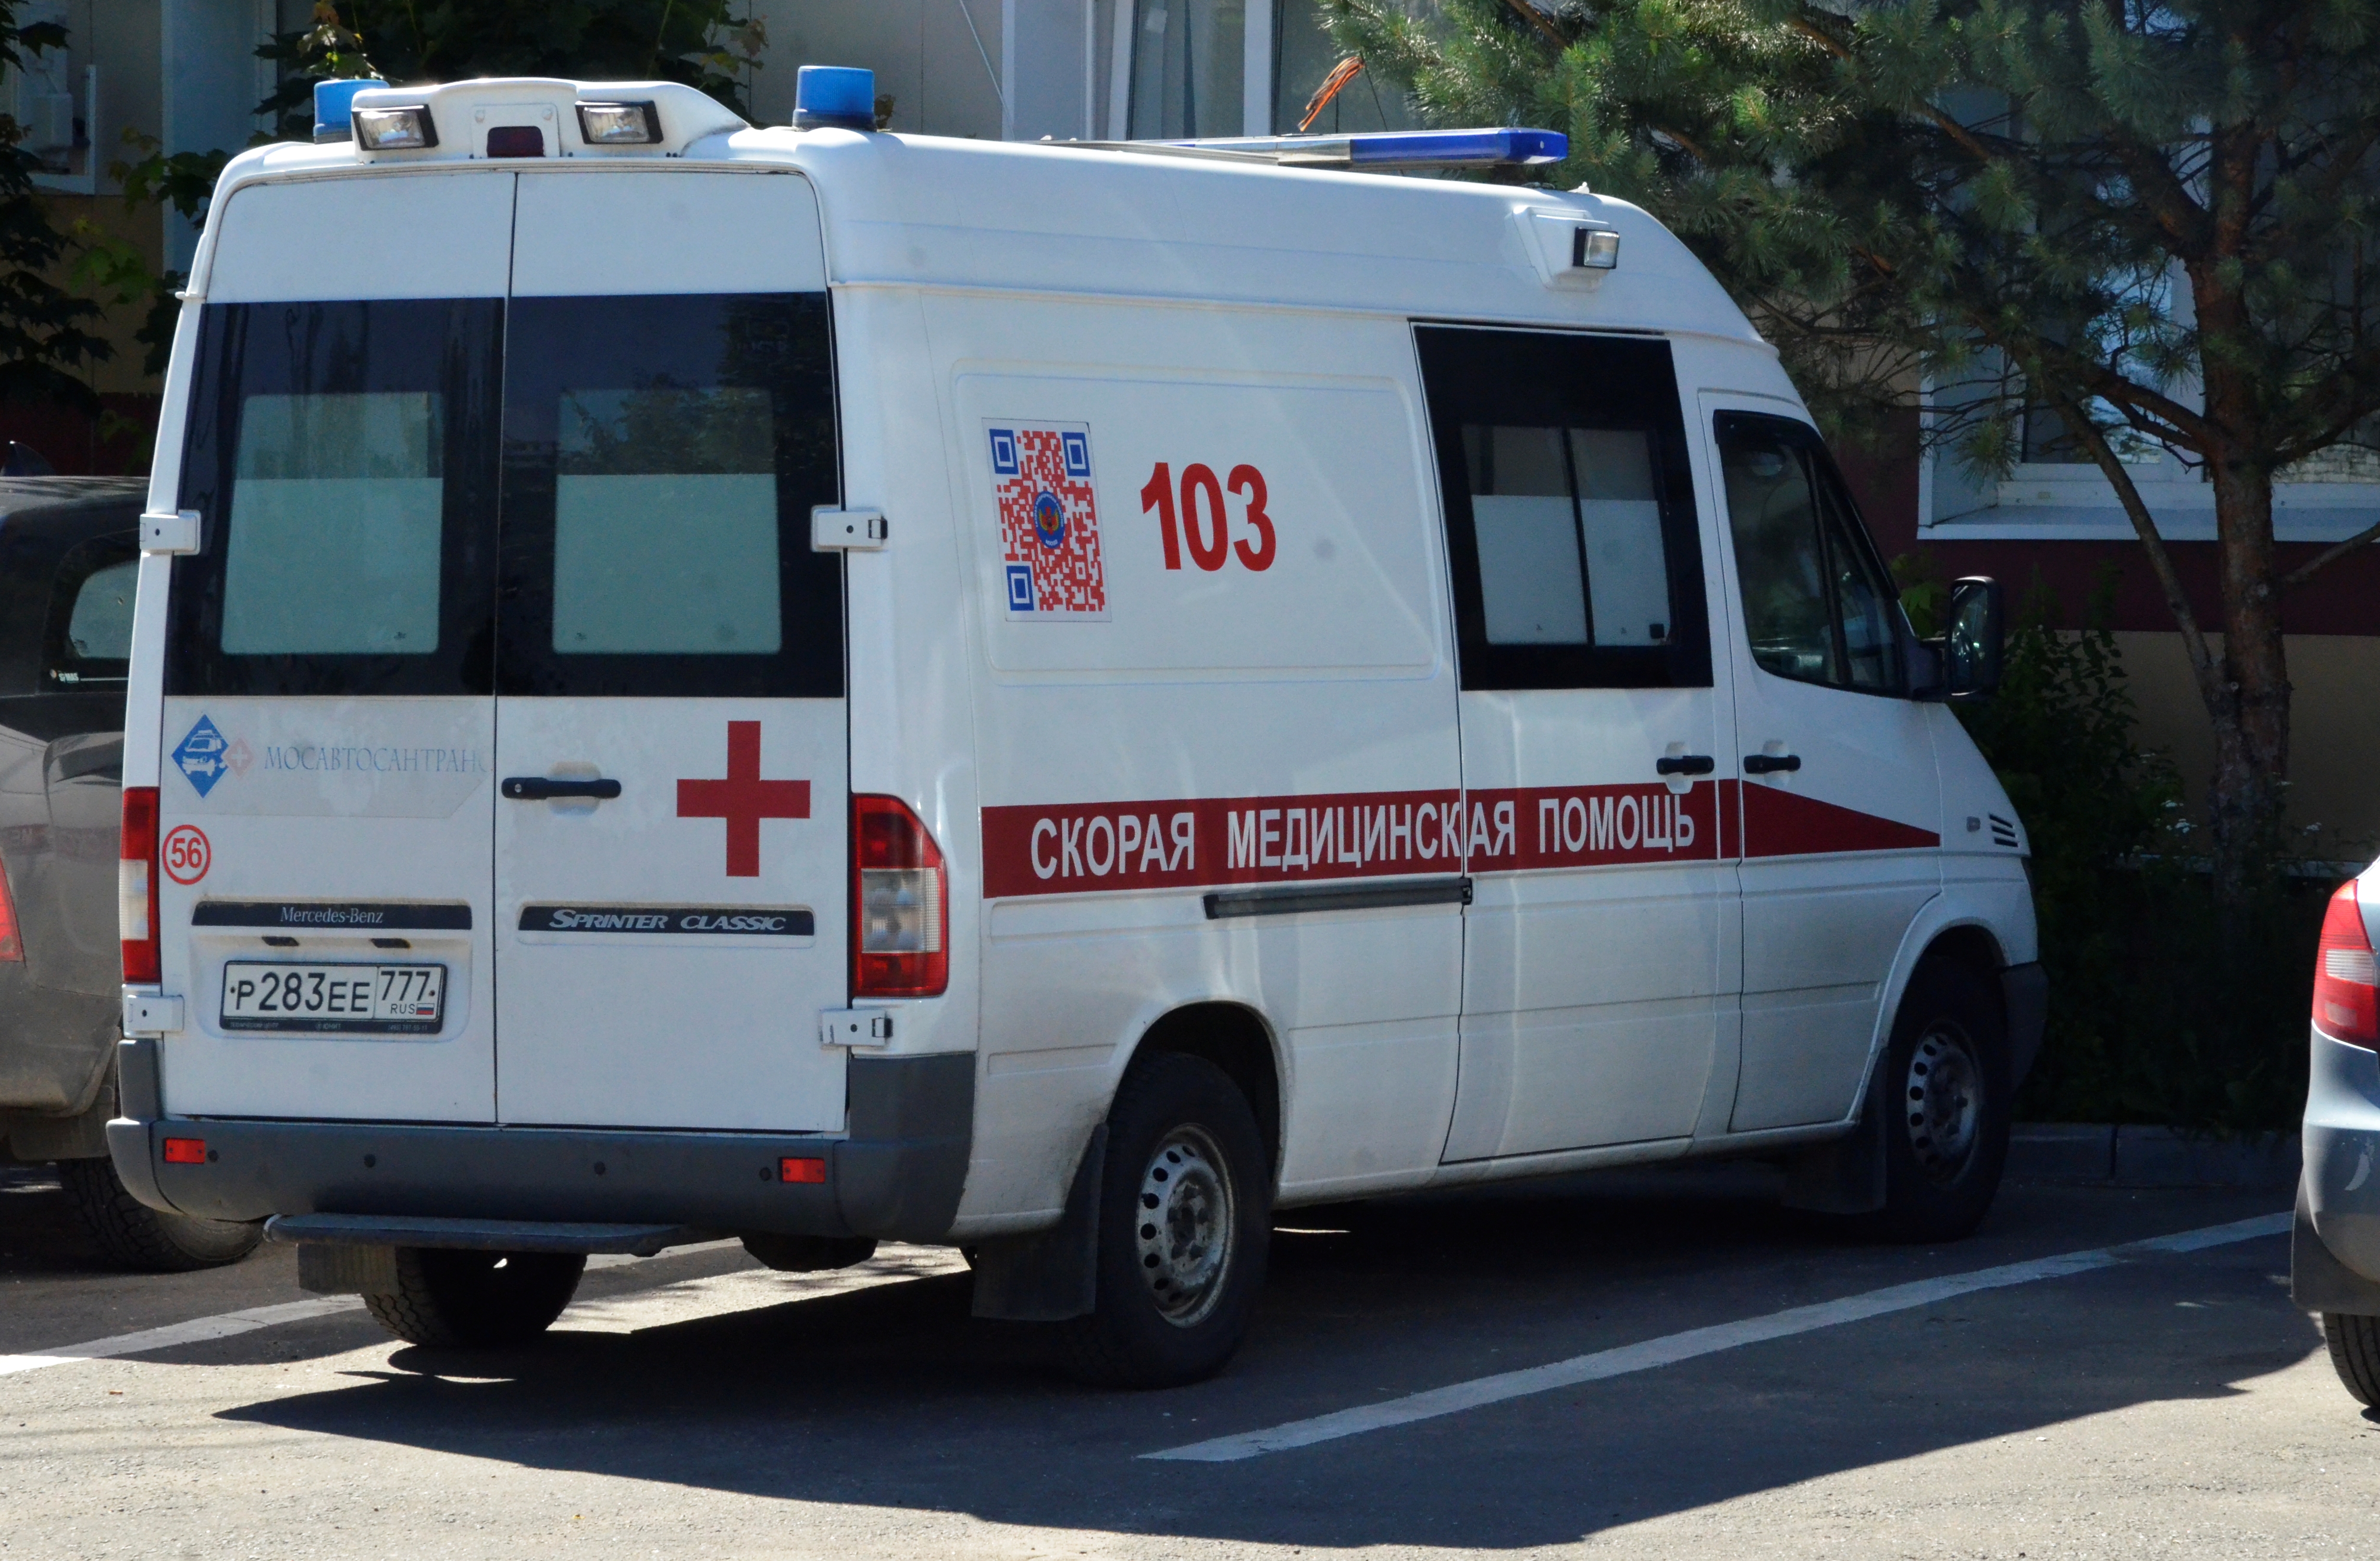 СМИ: Два человека погибли в ДТП в Подмосковье